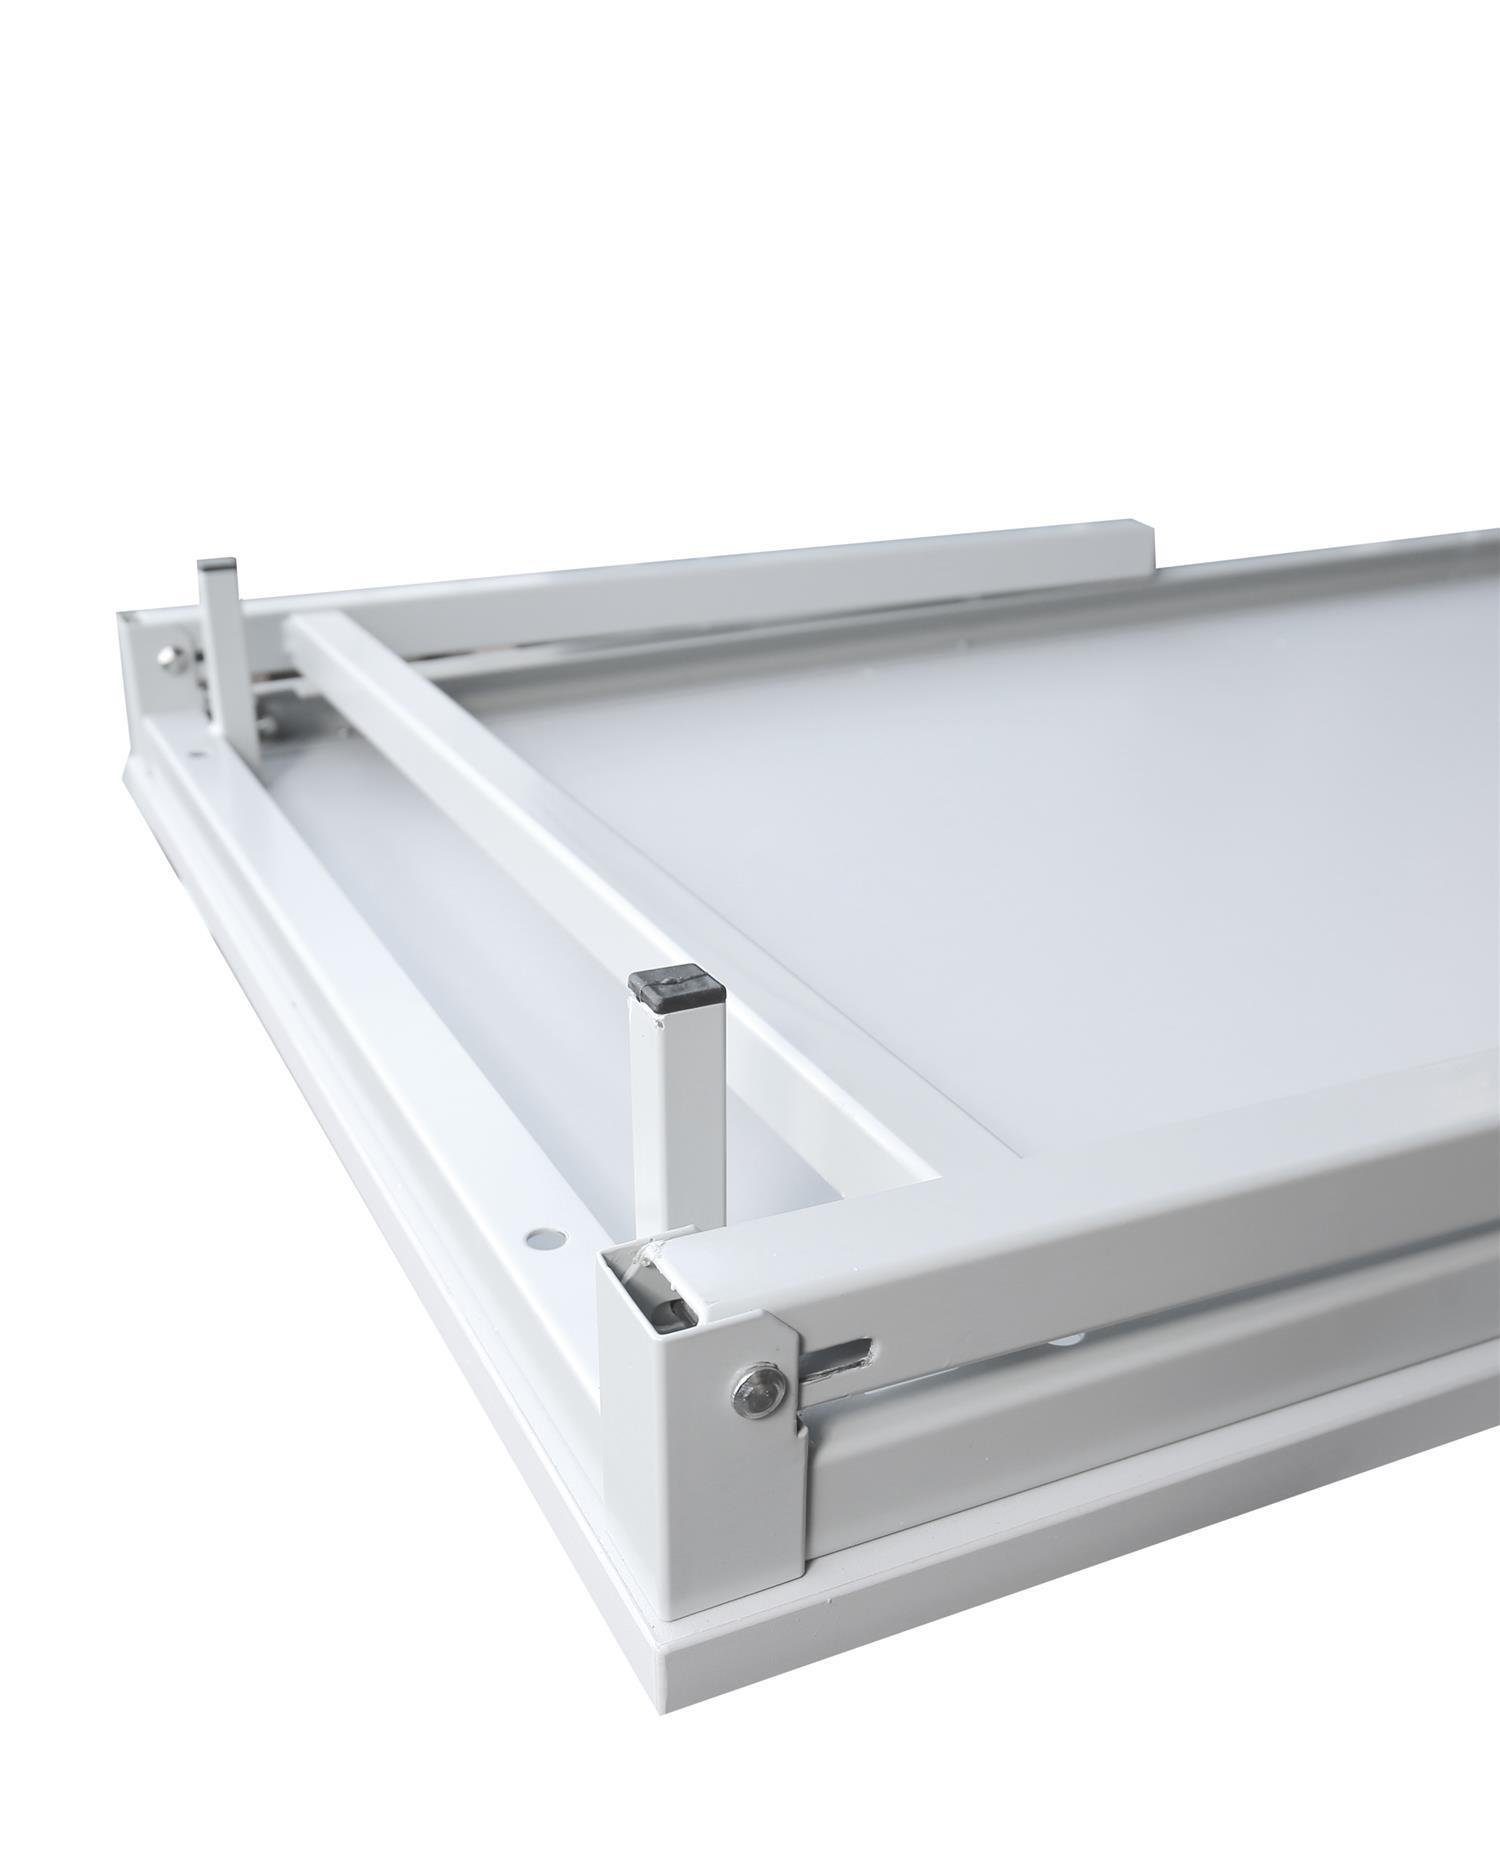 Besprechungstisch Schreibtisch mm 4-Fuß Steelboxx Klapptisch x 700 x 1400 750